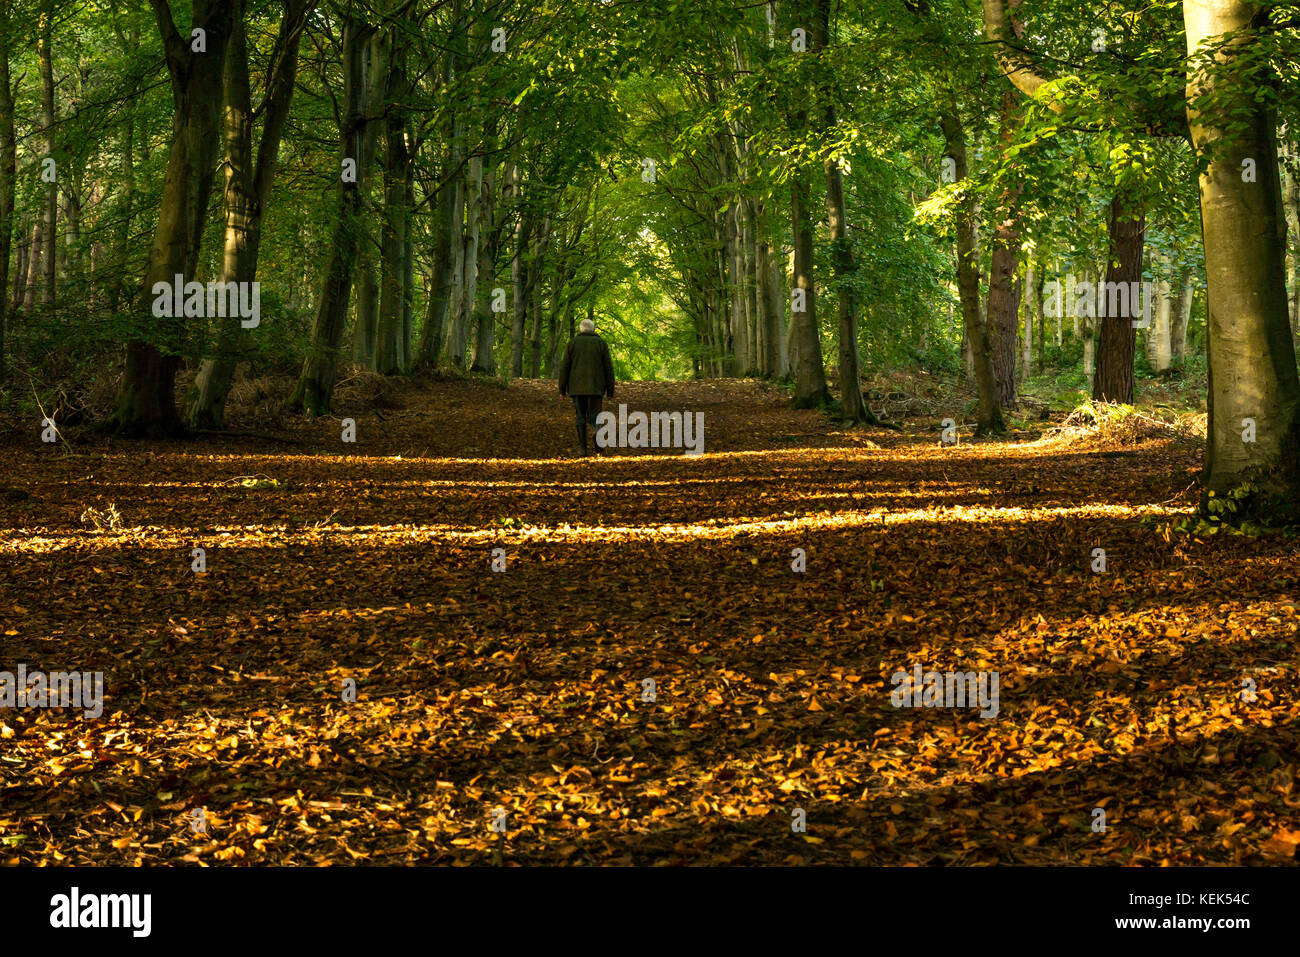 Binning Holz, East Lothian, Schottland, Großbritannien. 21. Oktober 2017. Ein einsamer älterer Mann in 60 s Wandern durch Wälder mit wenig Sonnenlicht, das in einem Waldgebiet Pfad mit Herbstlaub bedeckt Stockfoto